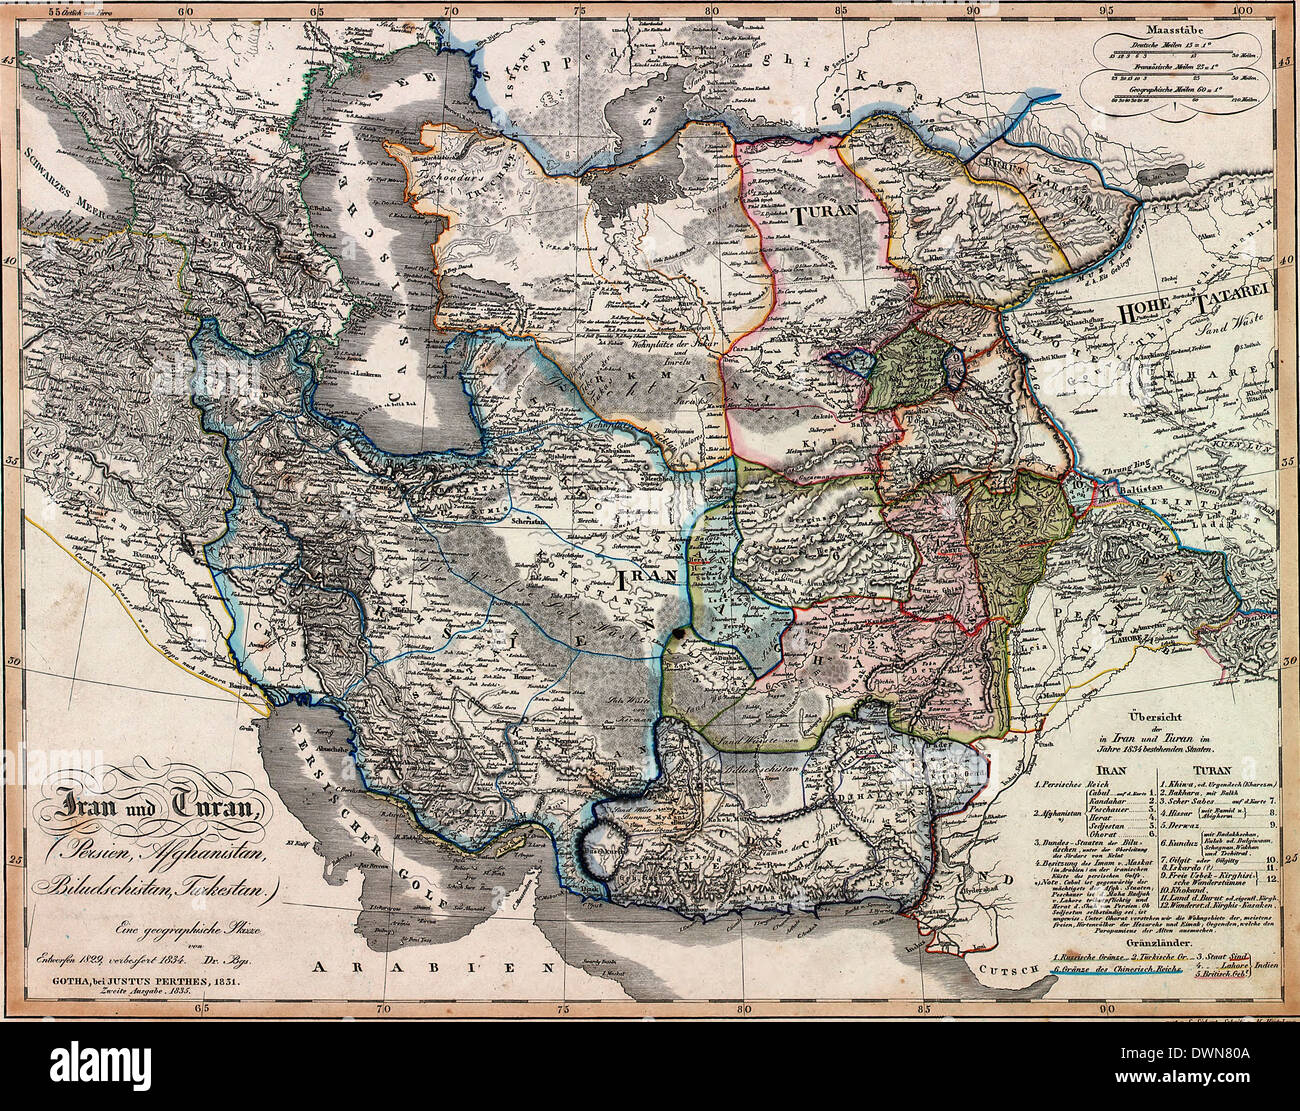 Iran und Turan: Persien, Afghanistan, Biludschistan, Tuckestan: Karte / 1835 Stockfoto